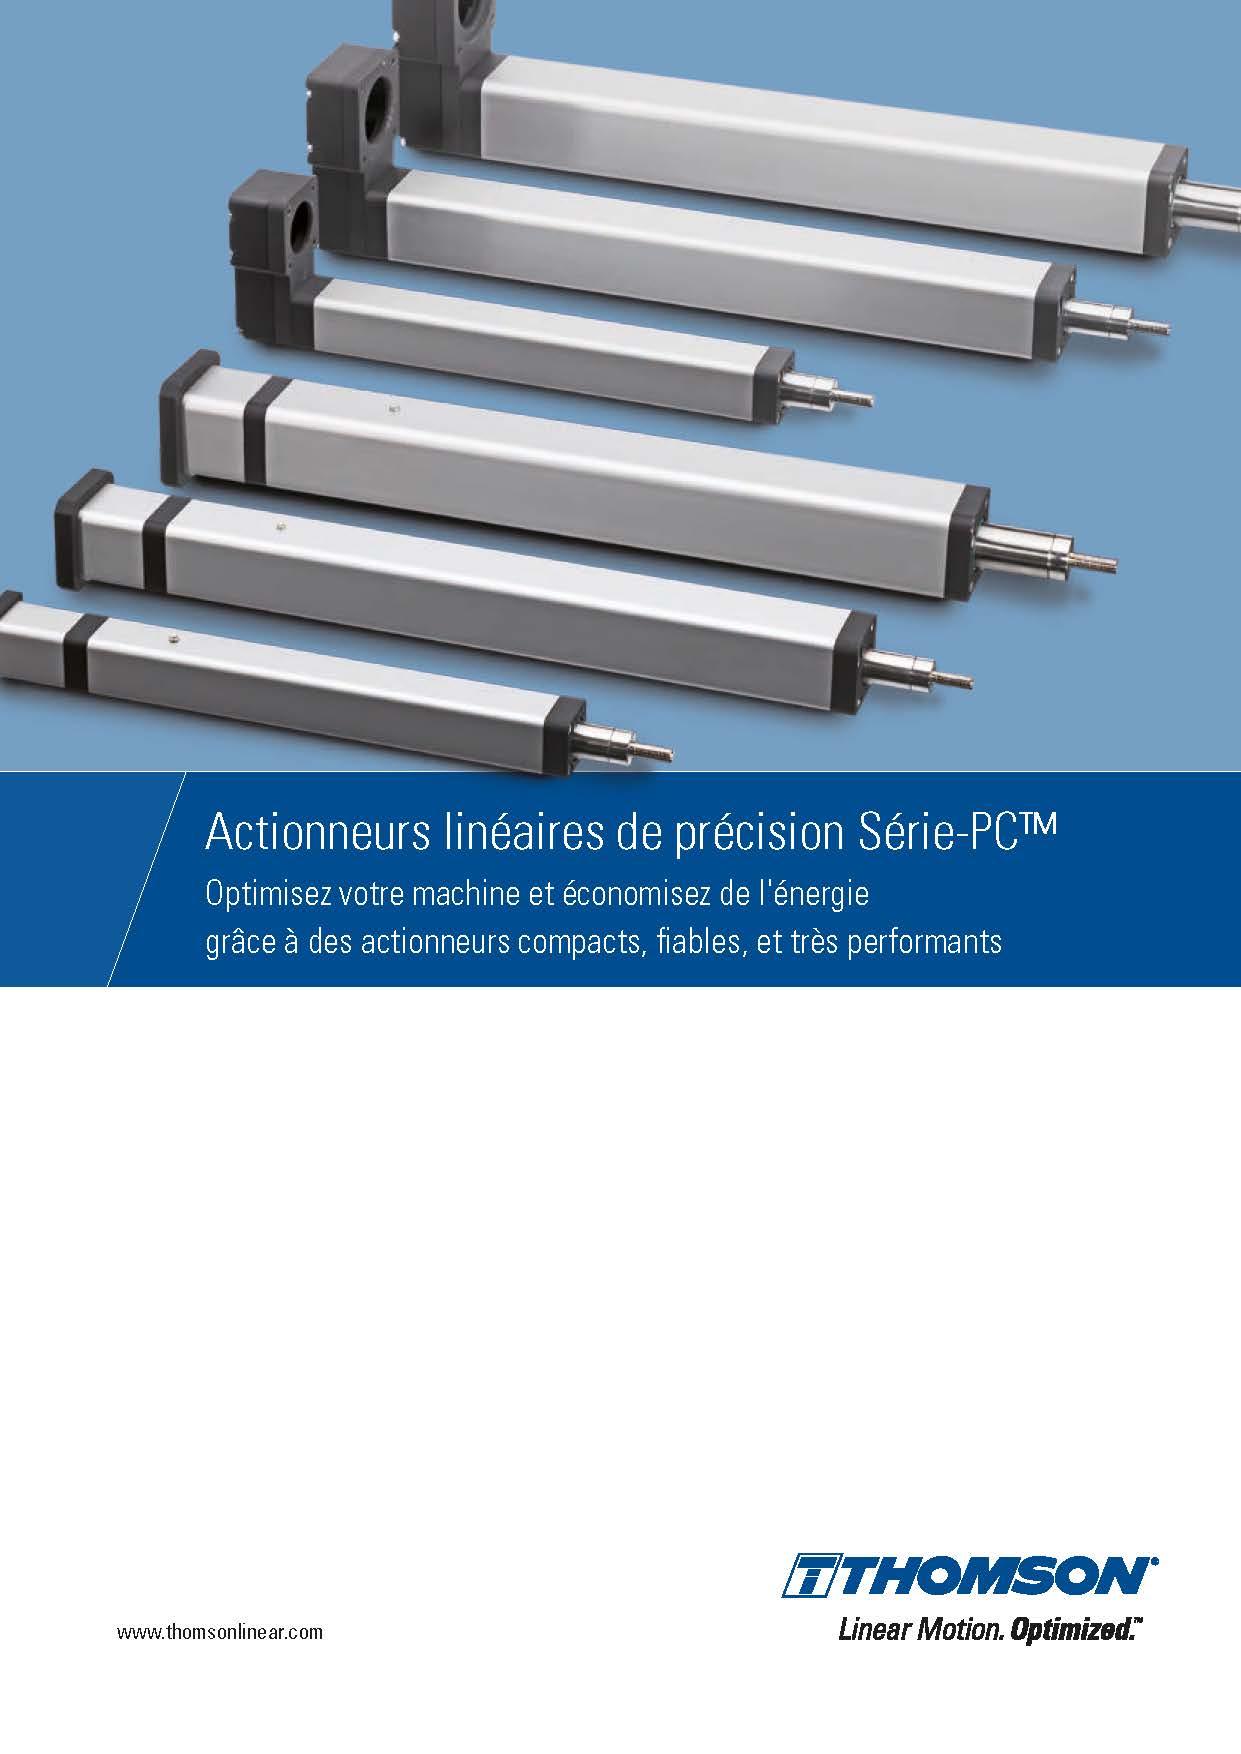 Thomson Actionneures lineaires de precision Serie PC Catalogue FR